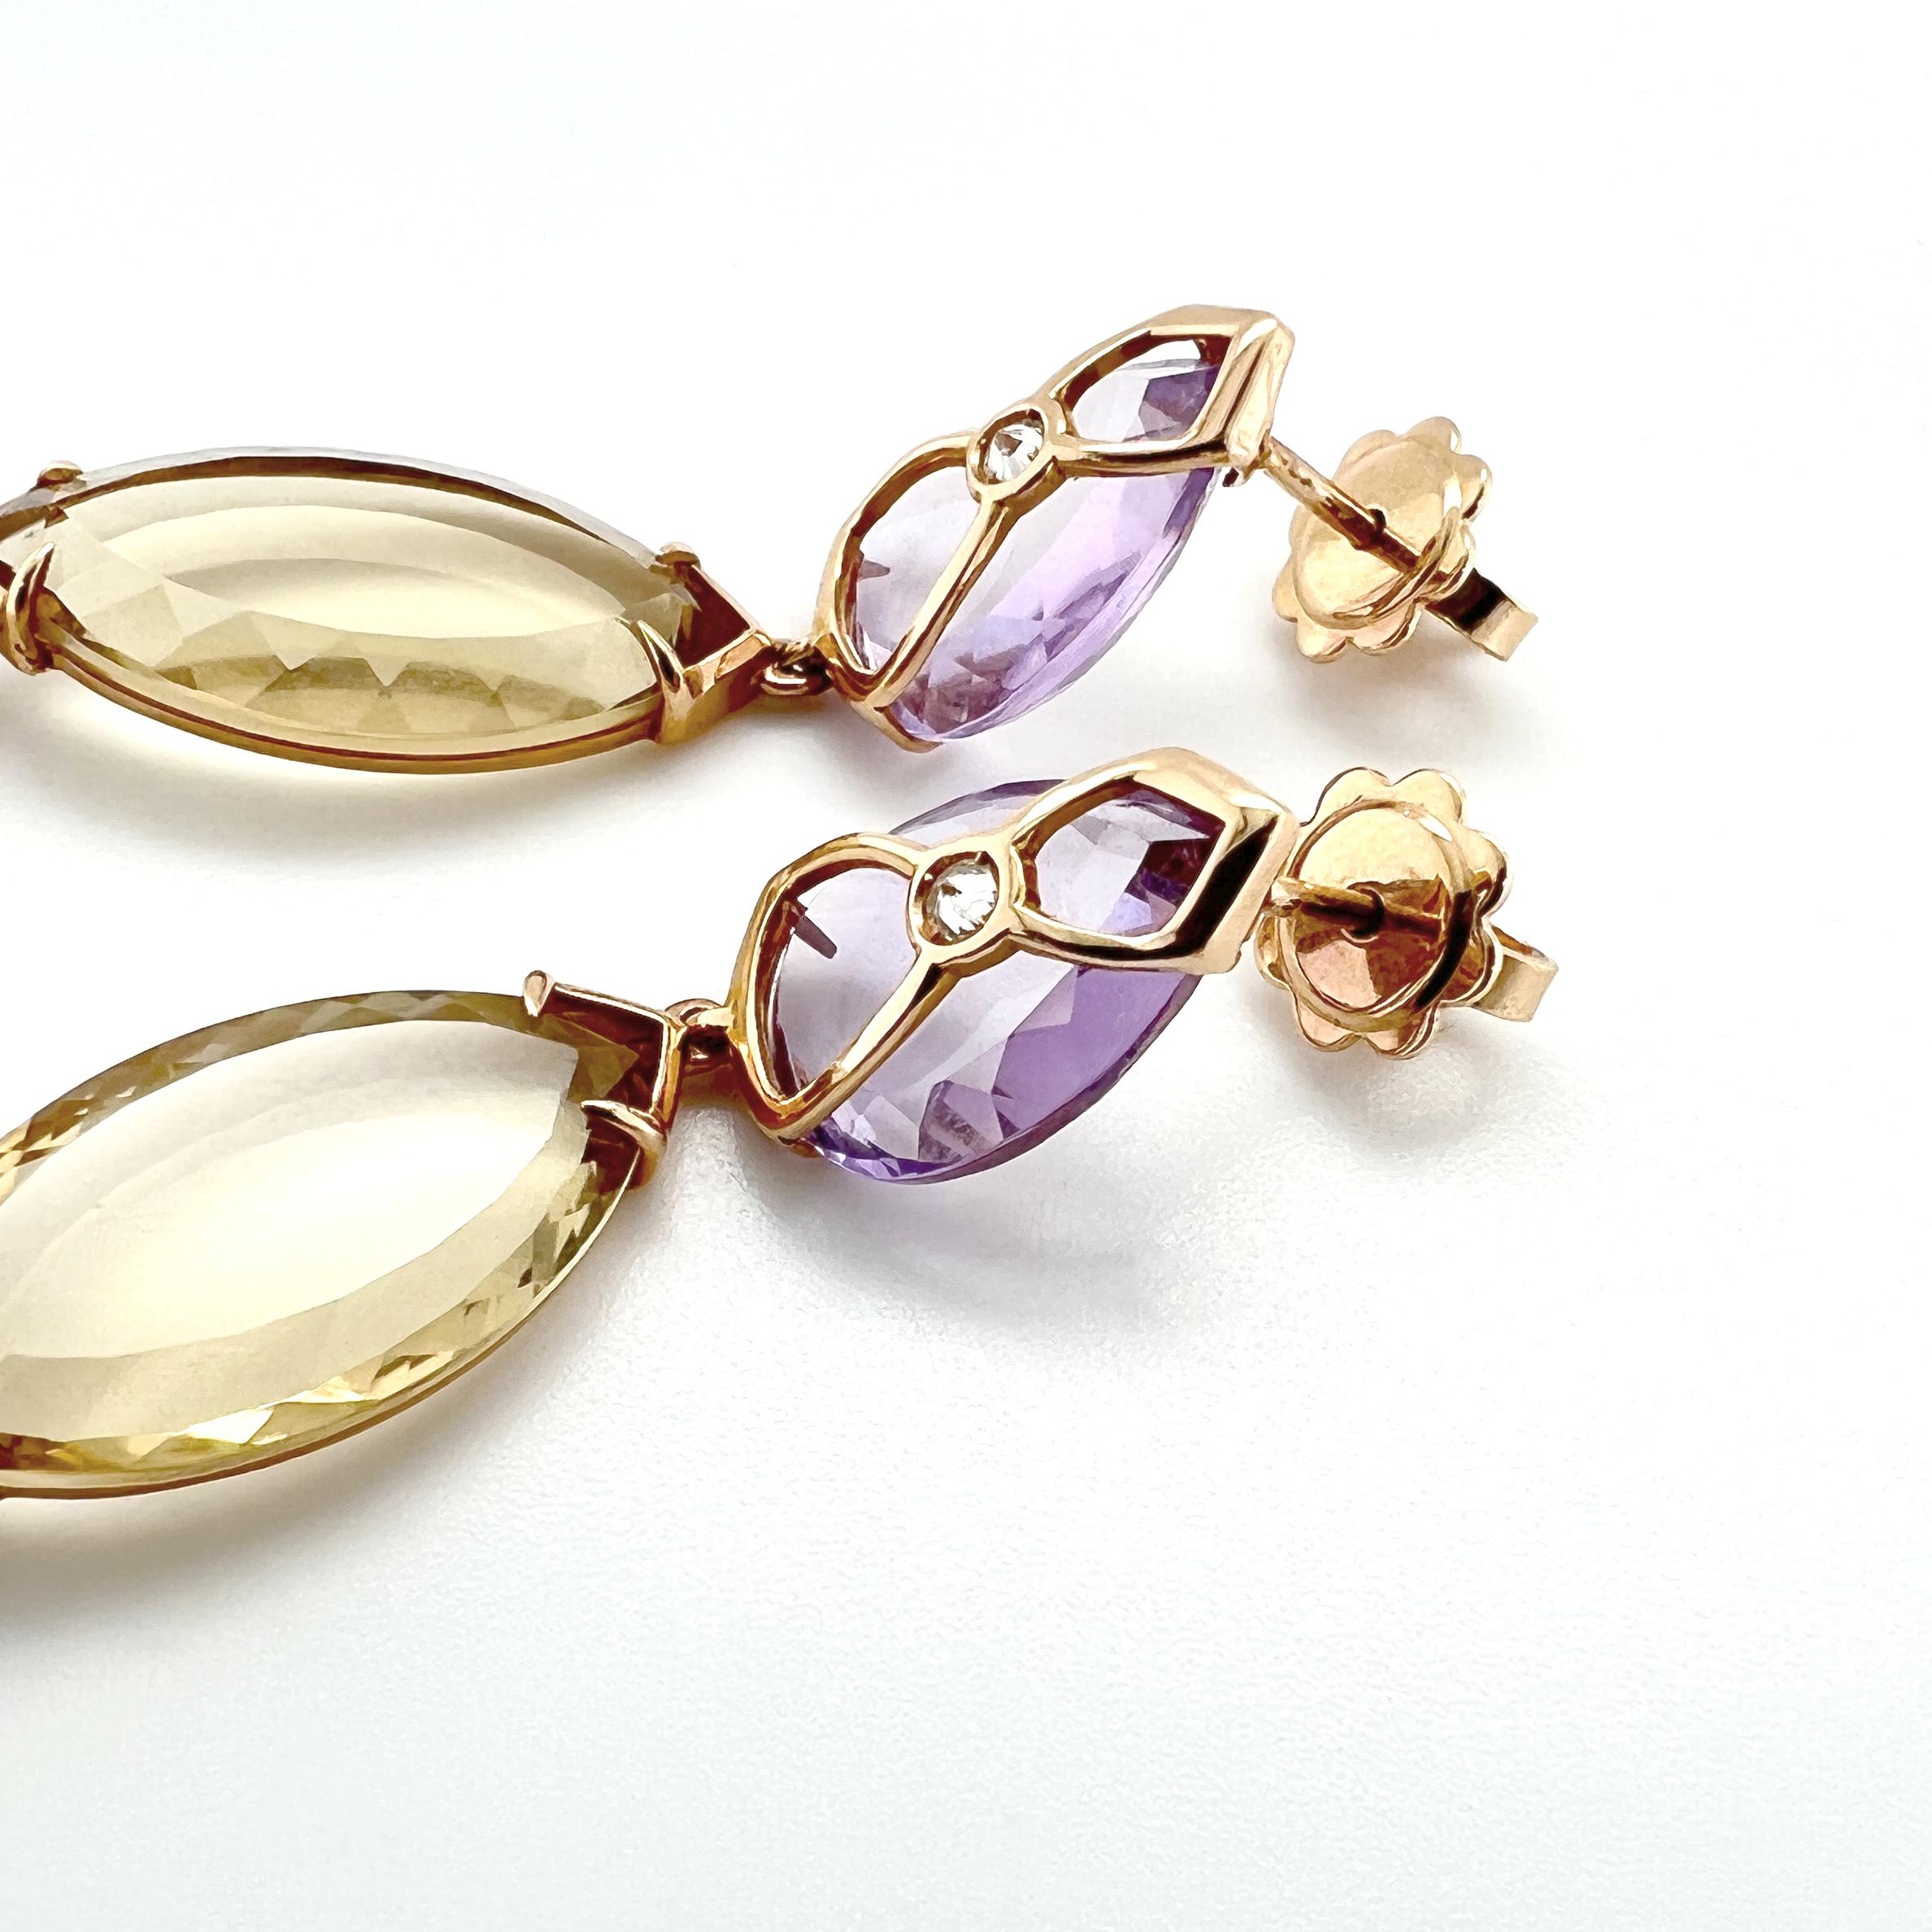 Modern Earrings 18KT gold, diamonds,  amethyst,  lemon quartz navette and a pink quartz For Sale